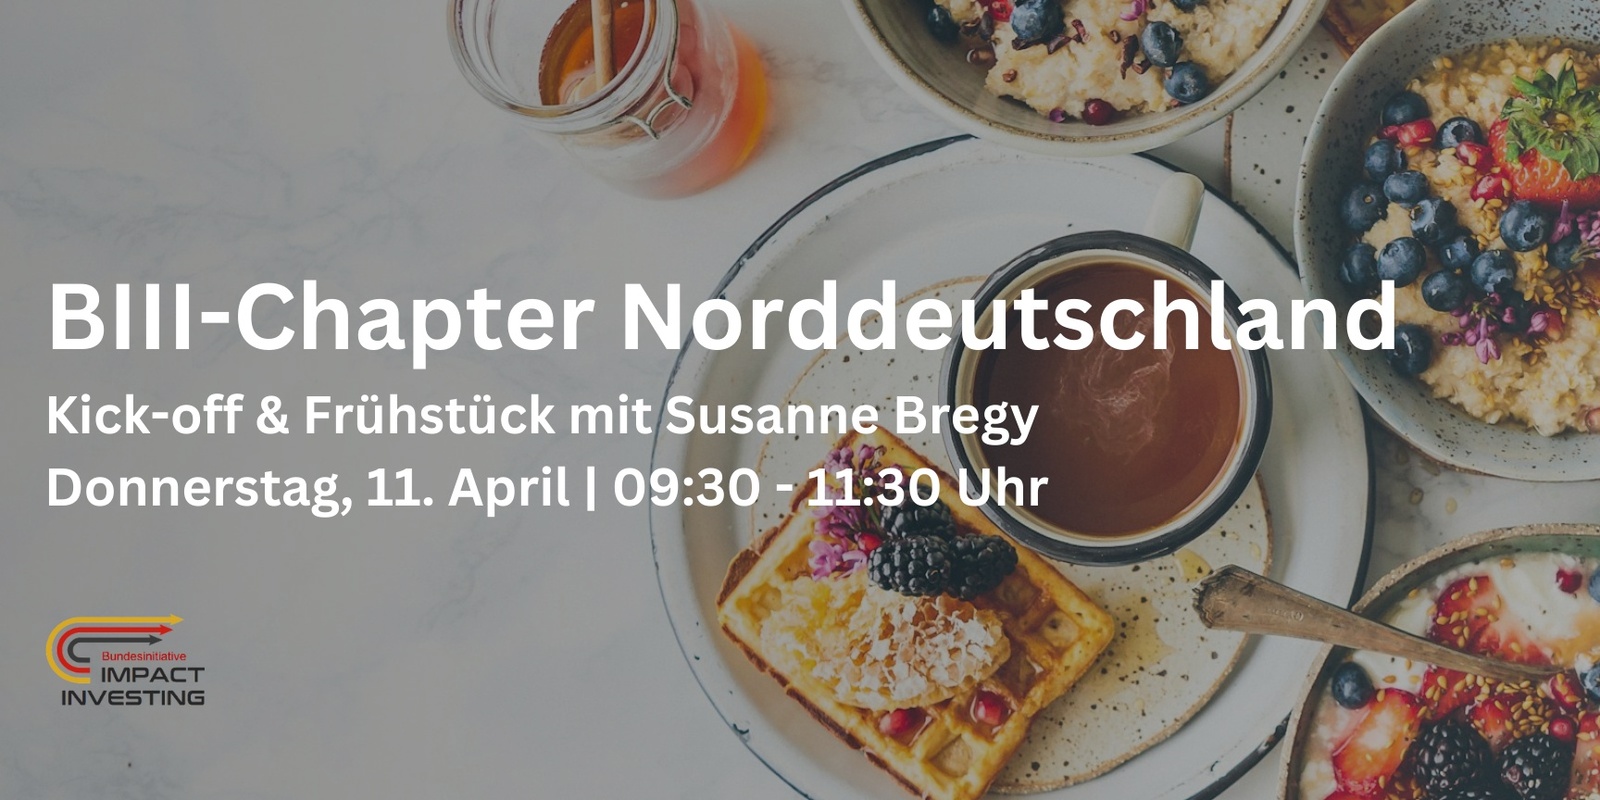 Banner image for BIII Chapter Norddeutschland: Kick-off & Frühstück mit Susanne Bregy